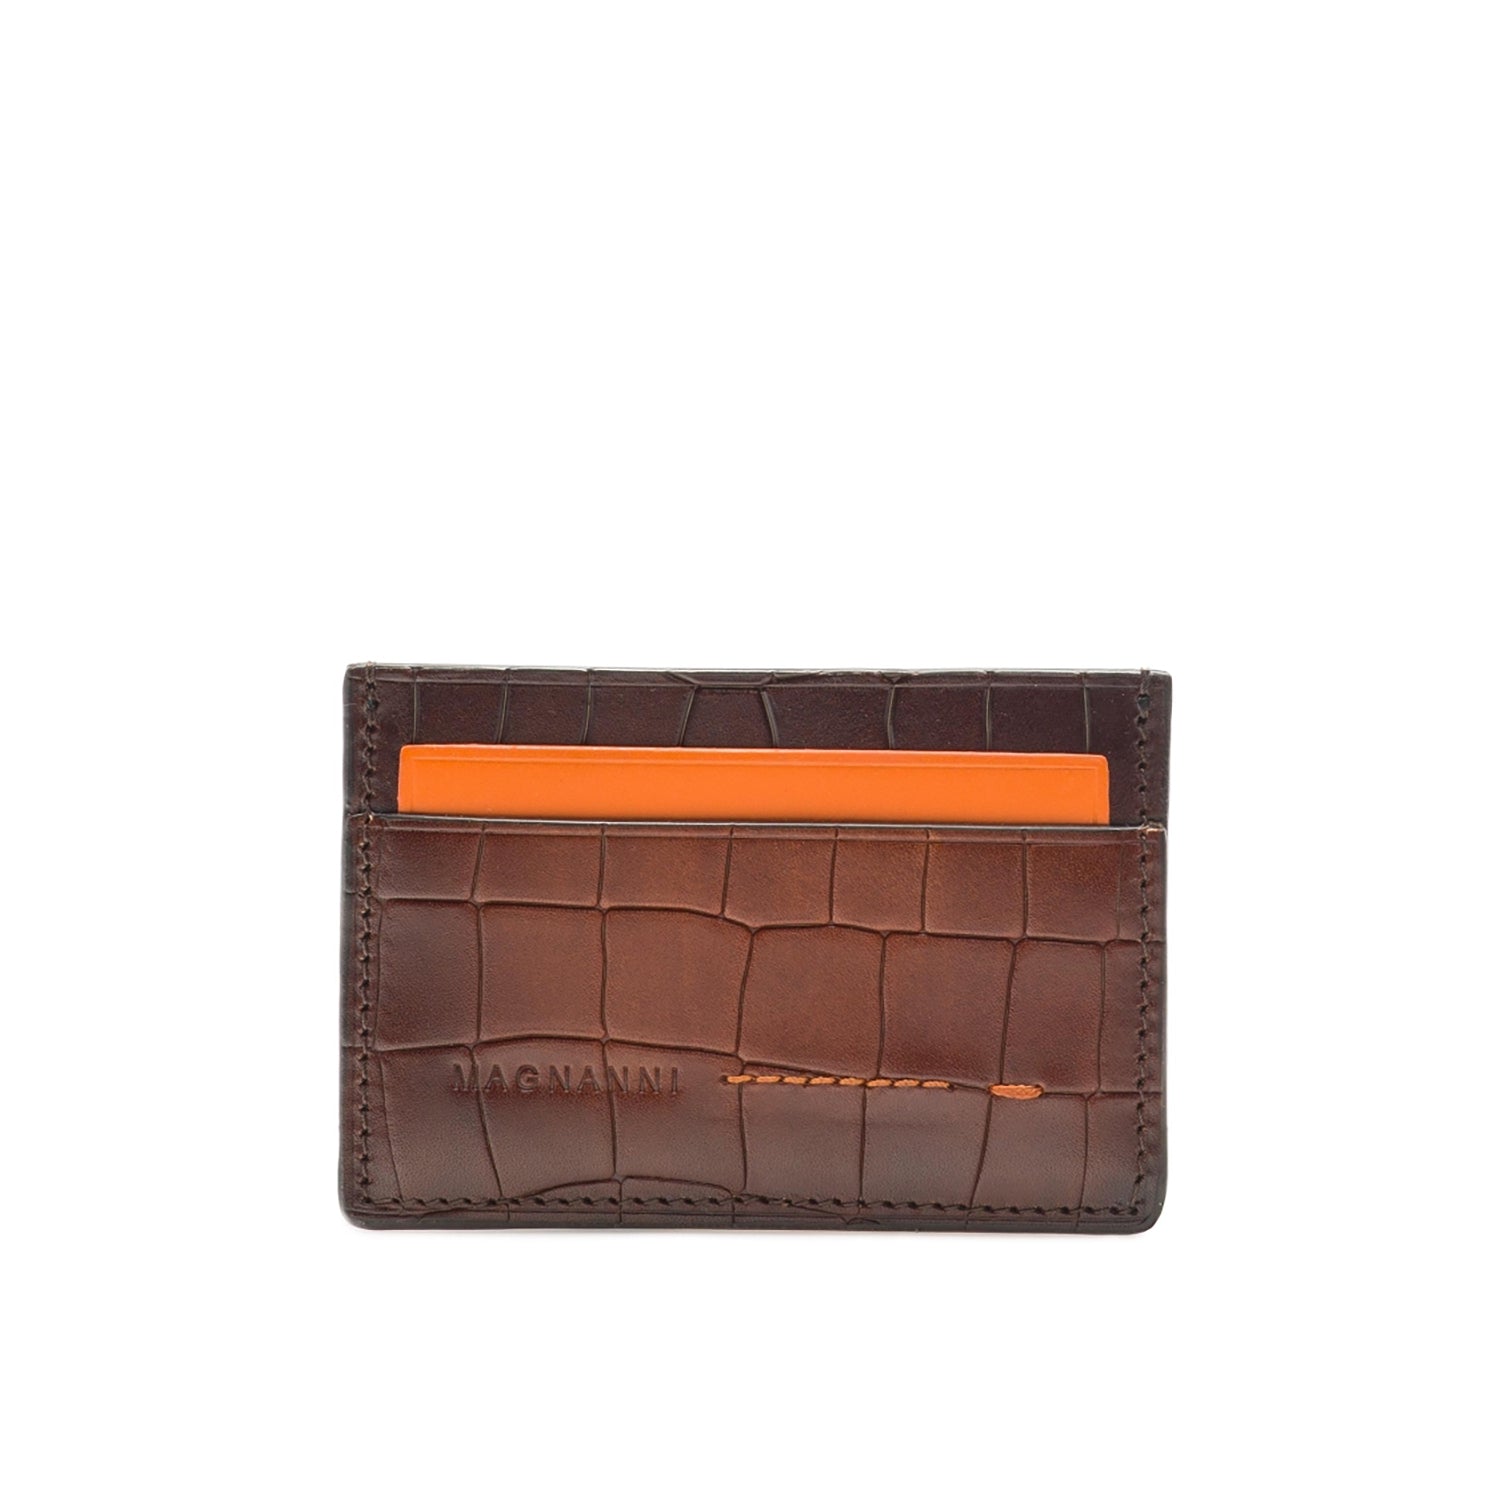 Magnanni 1283 Men's Cognac Alligator Print Leather Card Holder Wallet  (MAW1010)